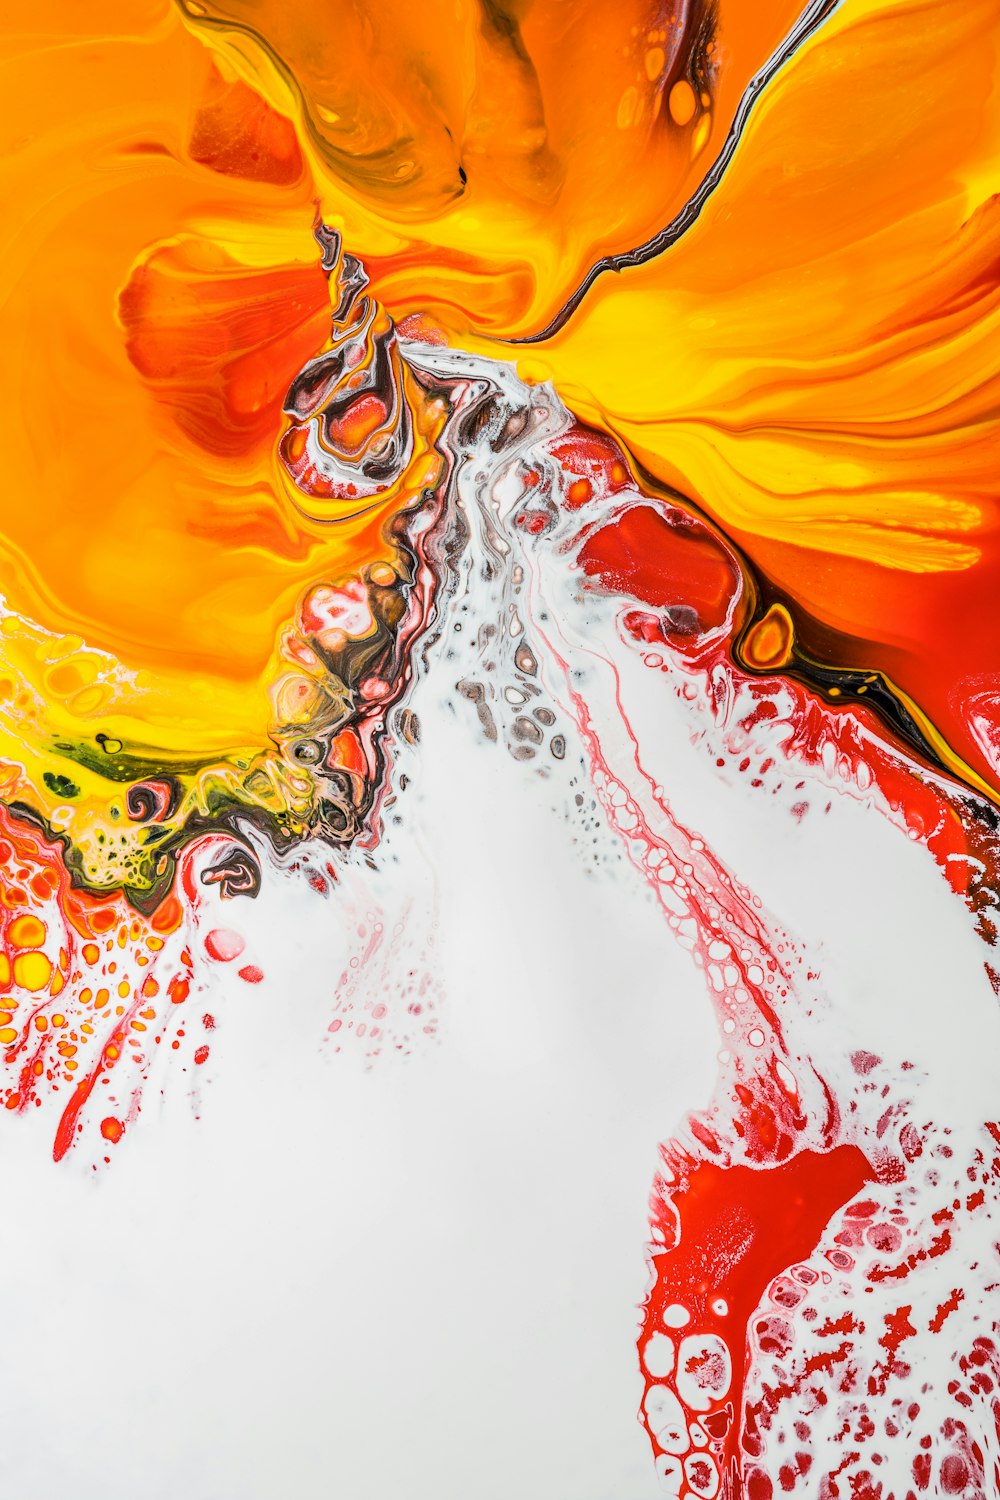 pintura abstrata laranja vermelha e branca